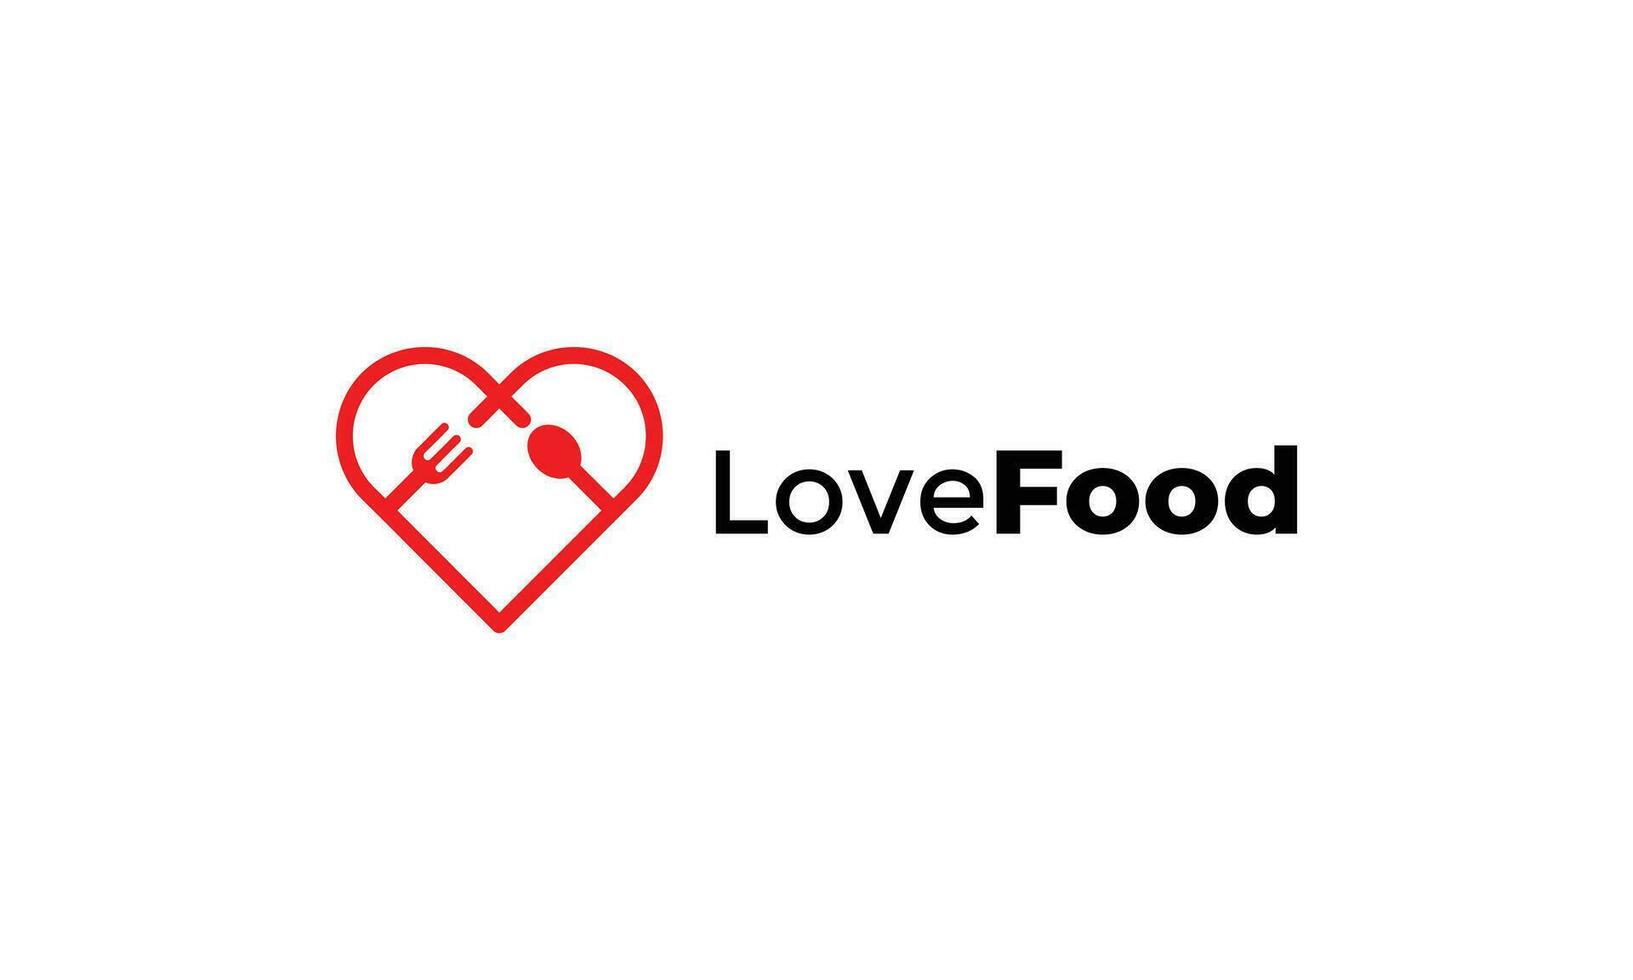 Liebe Gliederung Gabel und Löffel Logo zum Essen Geschäft vektor